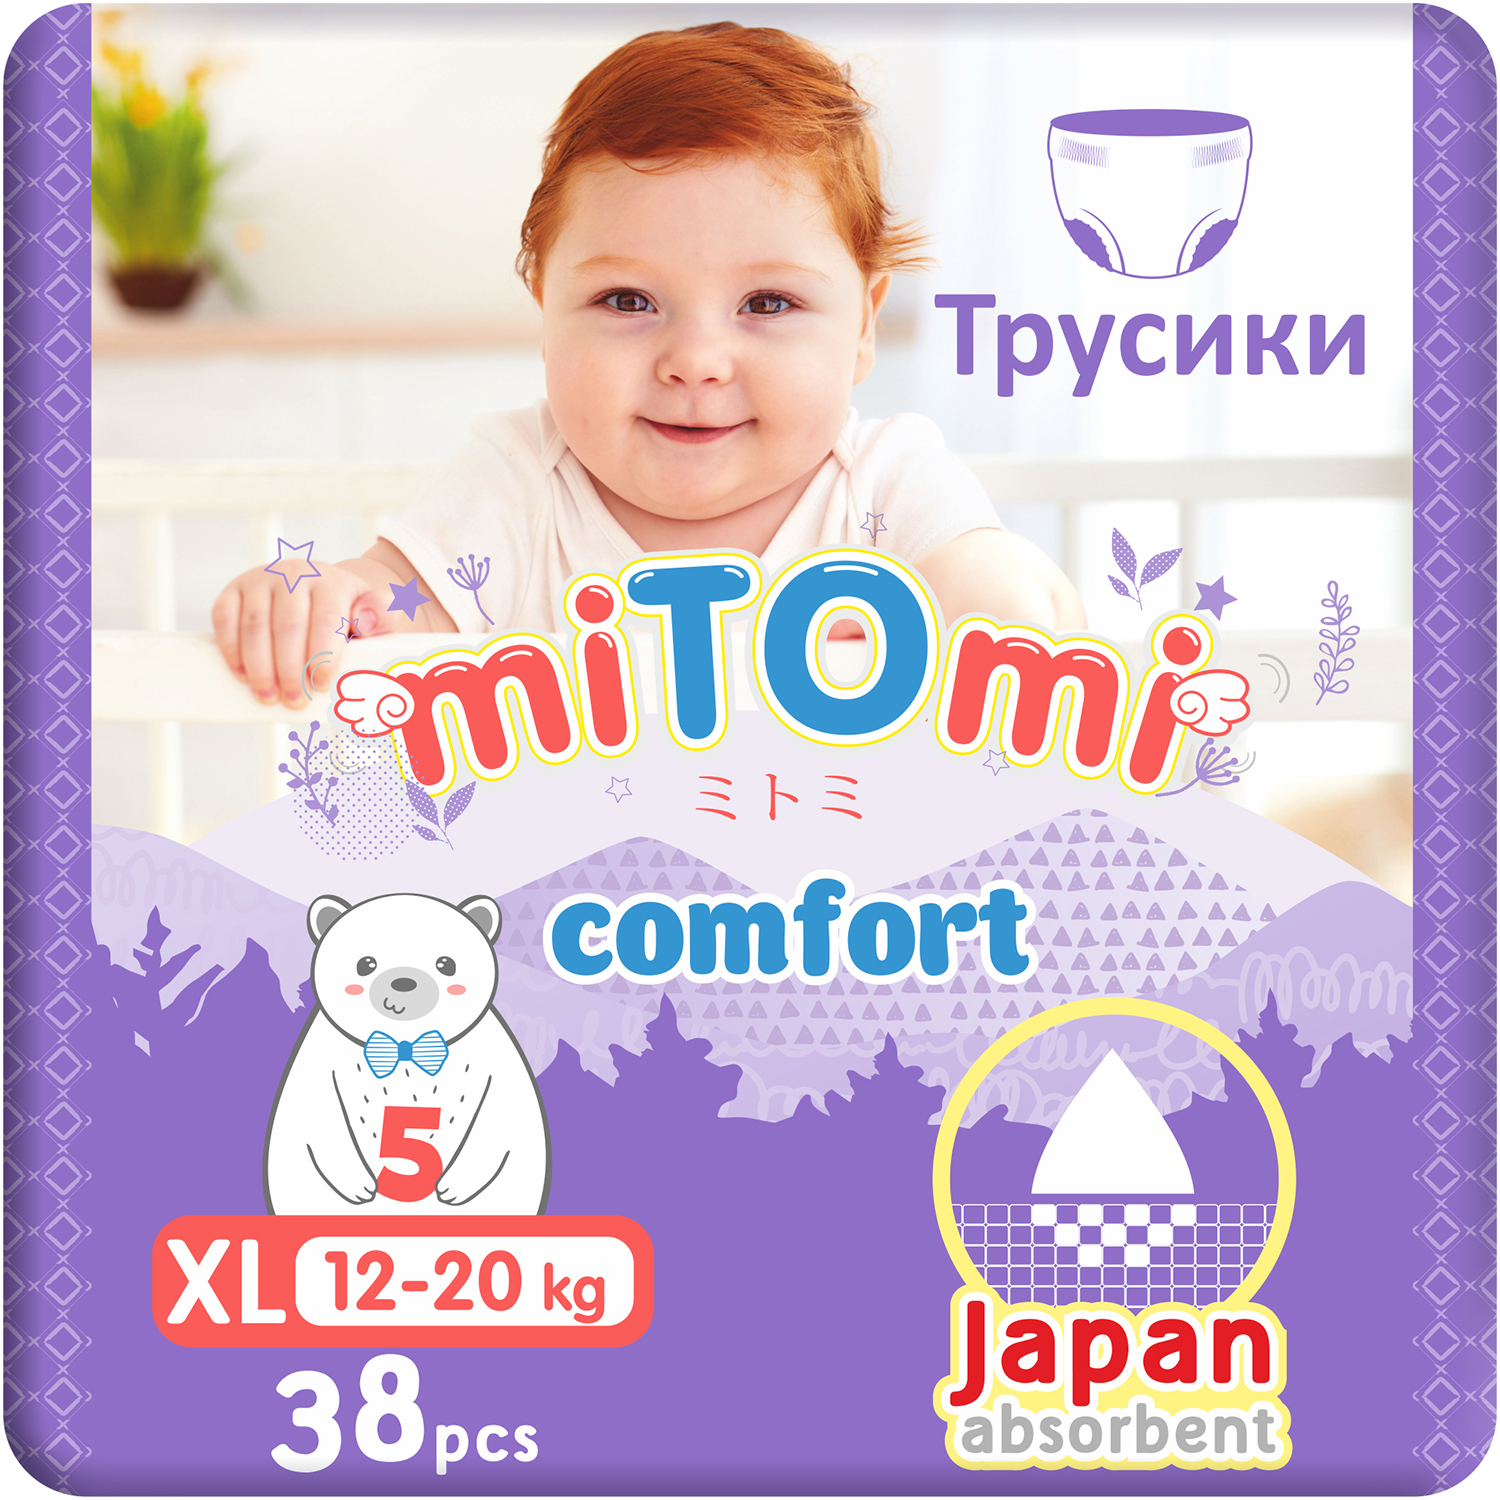 Купить Подгузники-трусики miTOmi Comfort, XL (12-20 кг), 38 шт.,